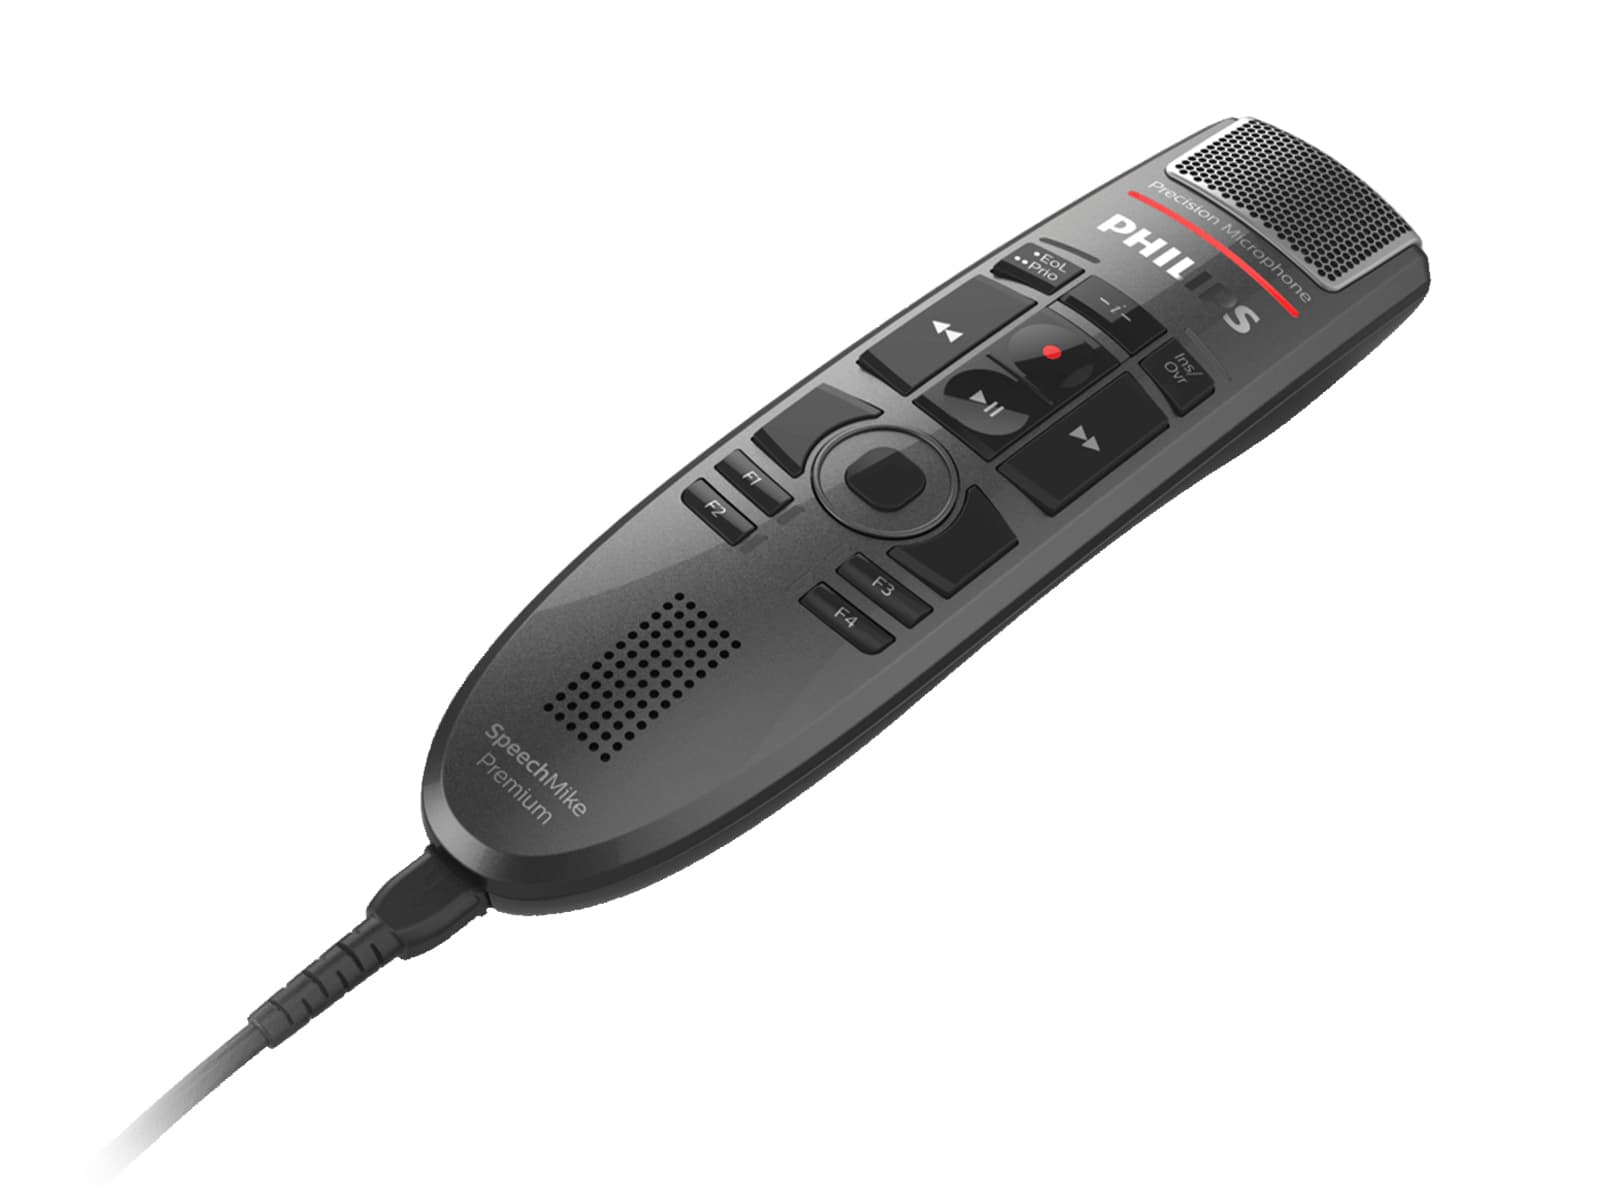 Philips SpeechMike Premium Touch-Diktiermikrofon (SMP3700) Monitors.com